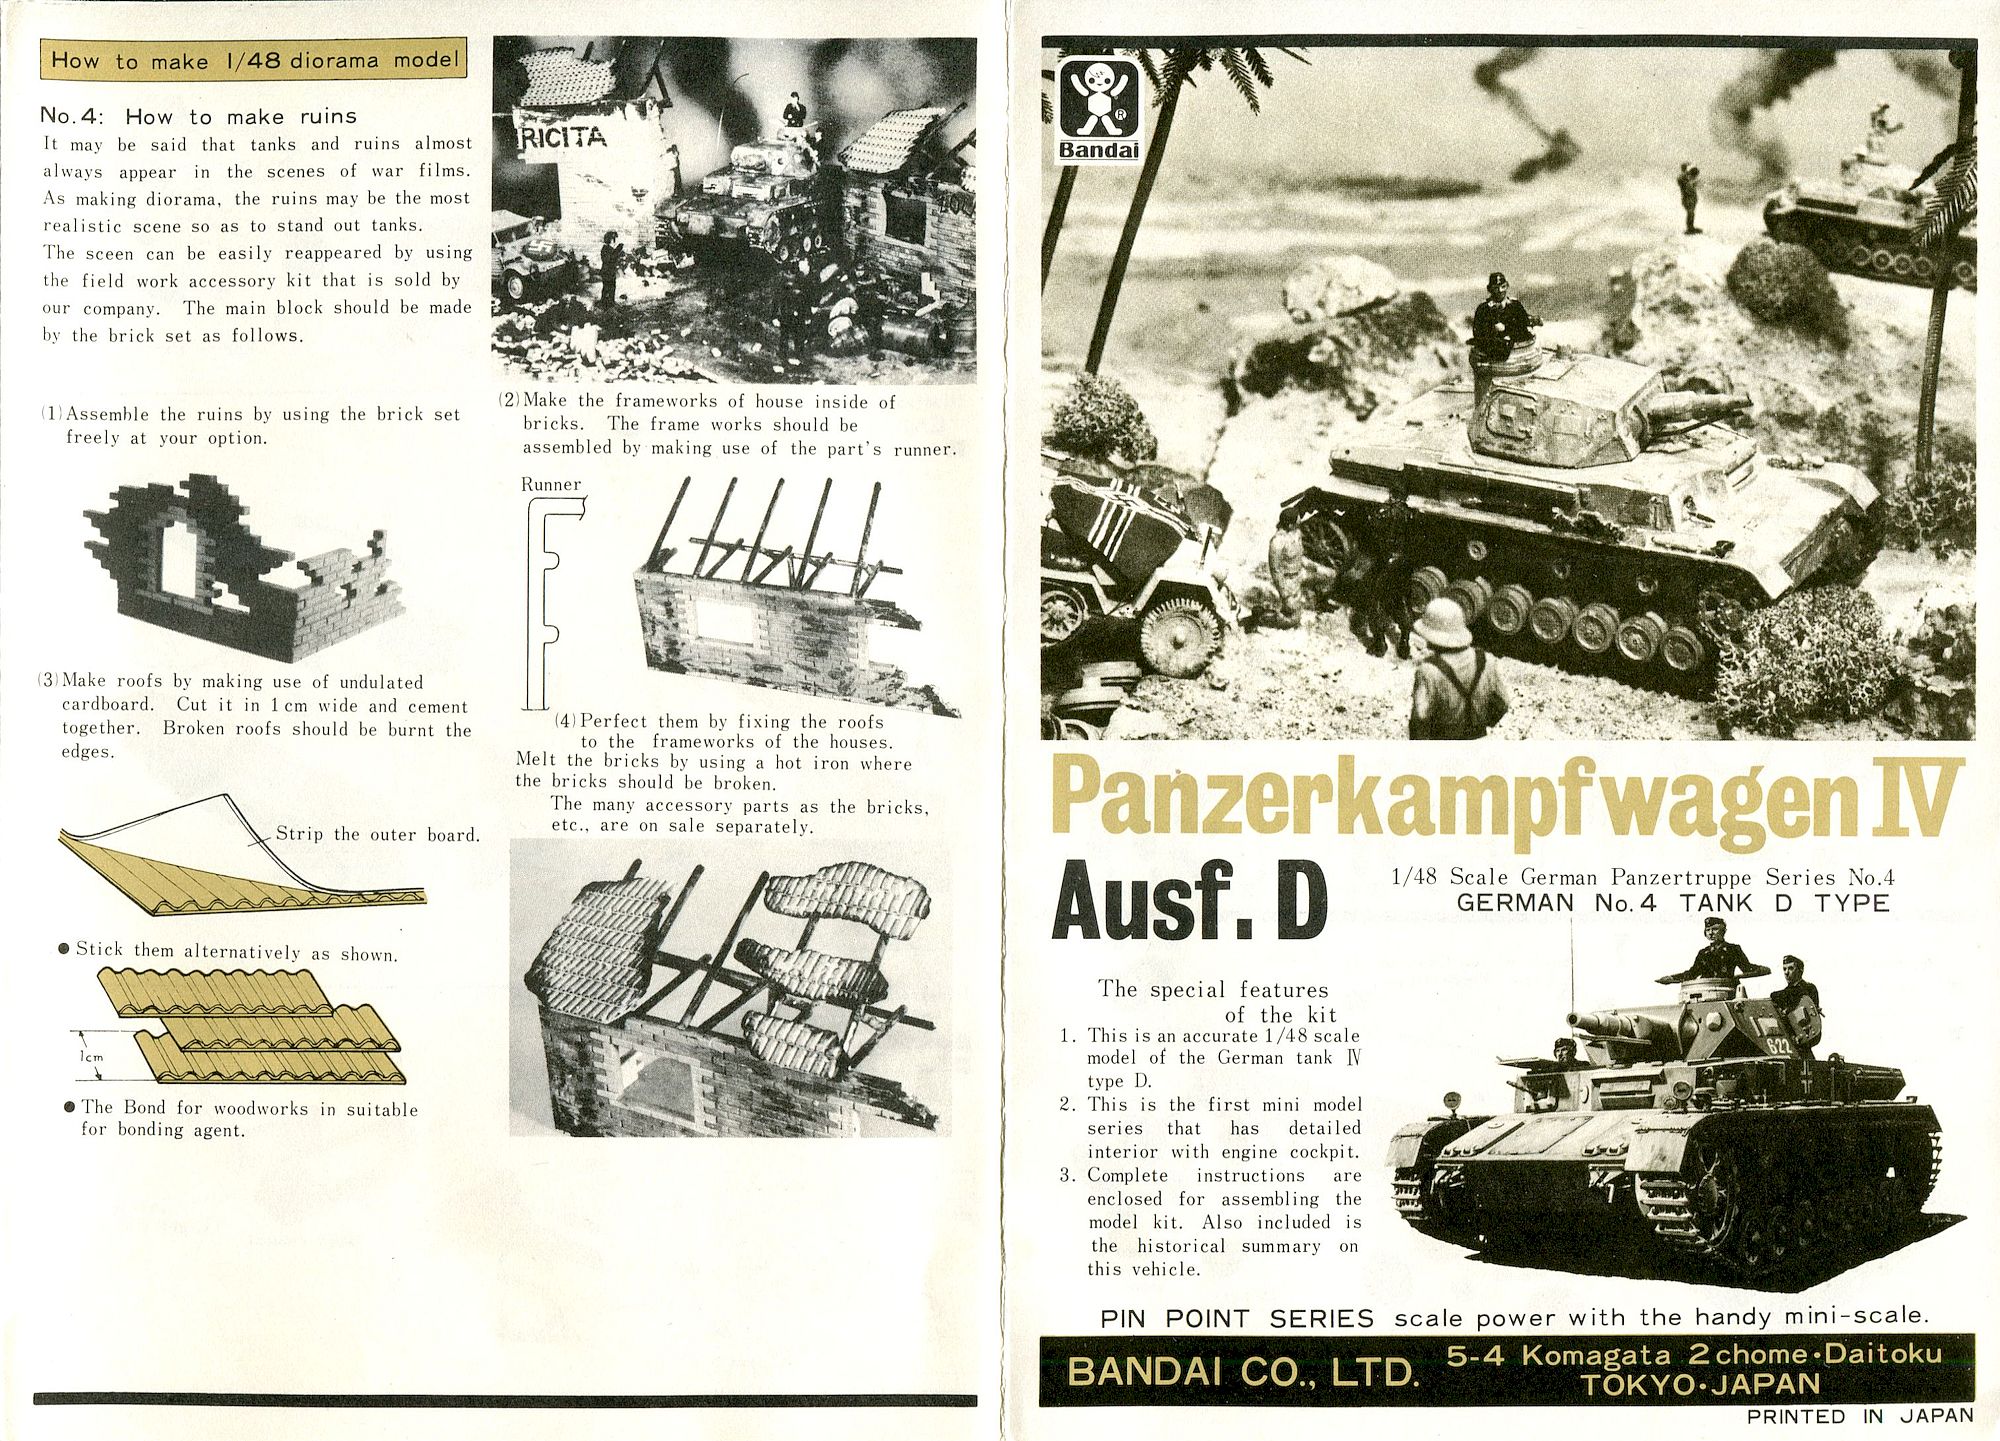 Обзор Panzerkampfwagen IV Ausf. D от комнапии Bandai в масштабе 1/48